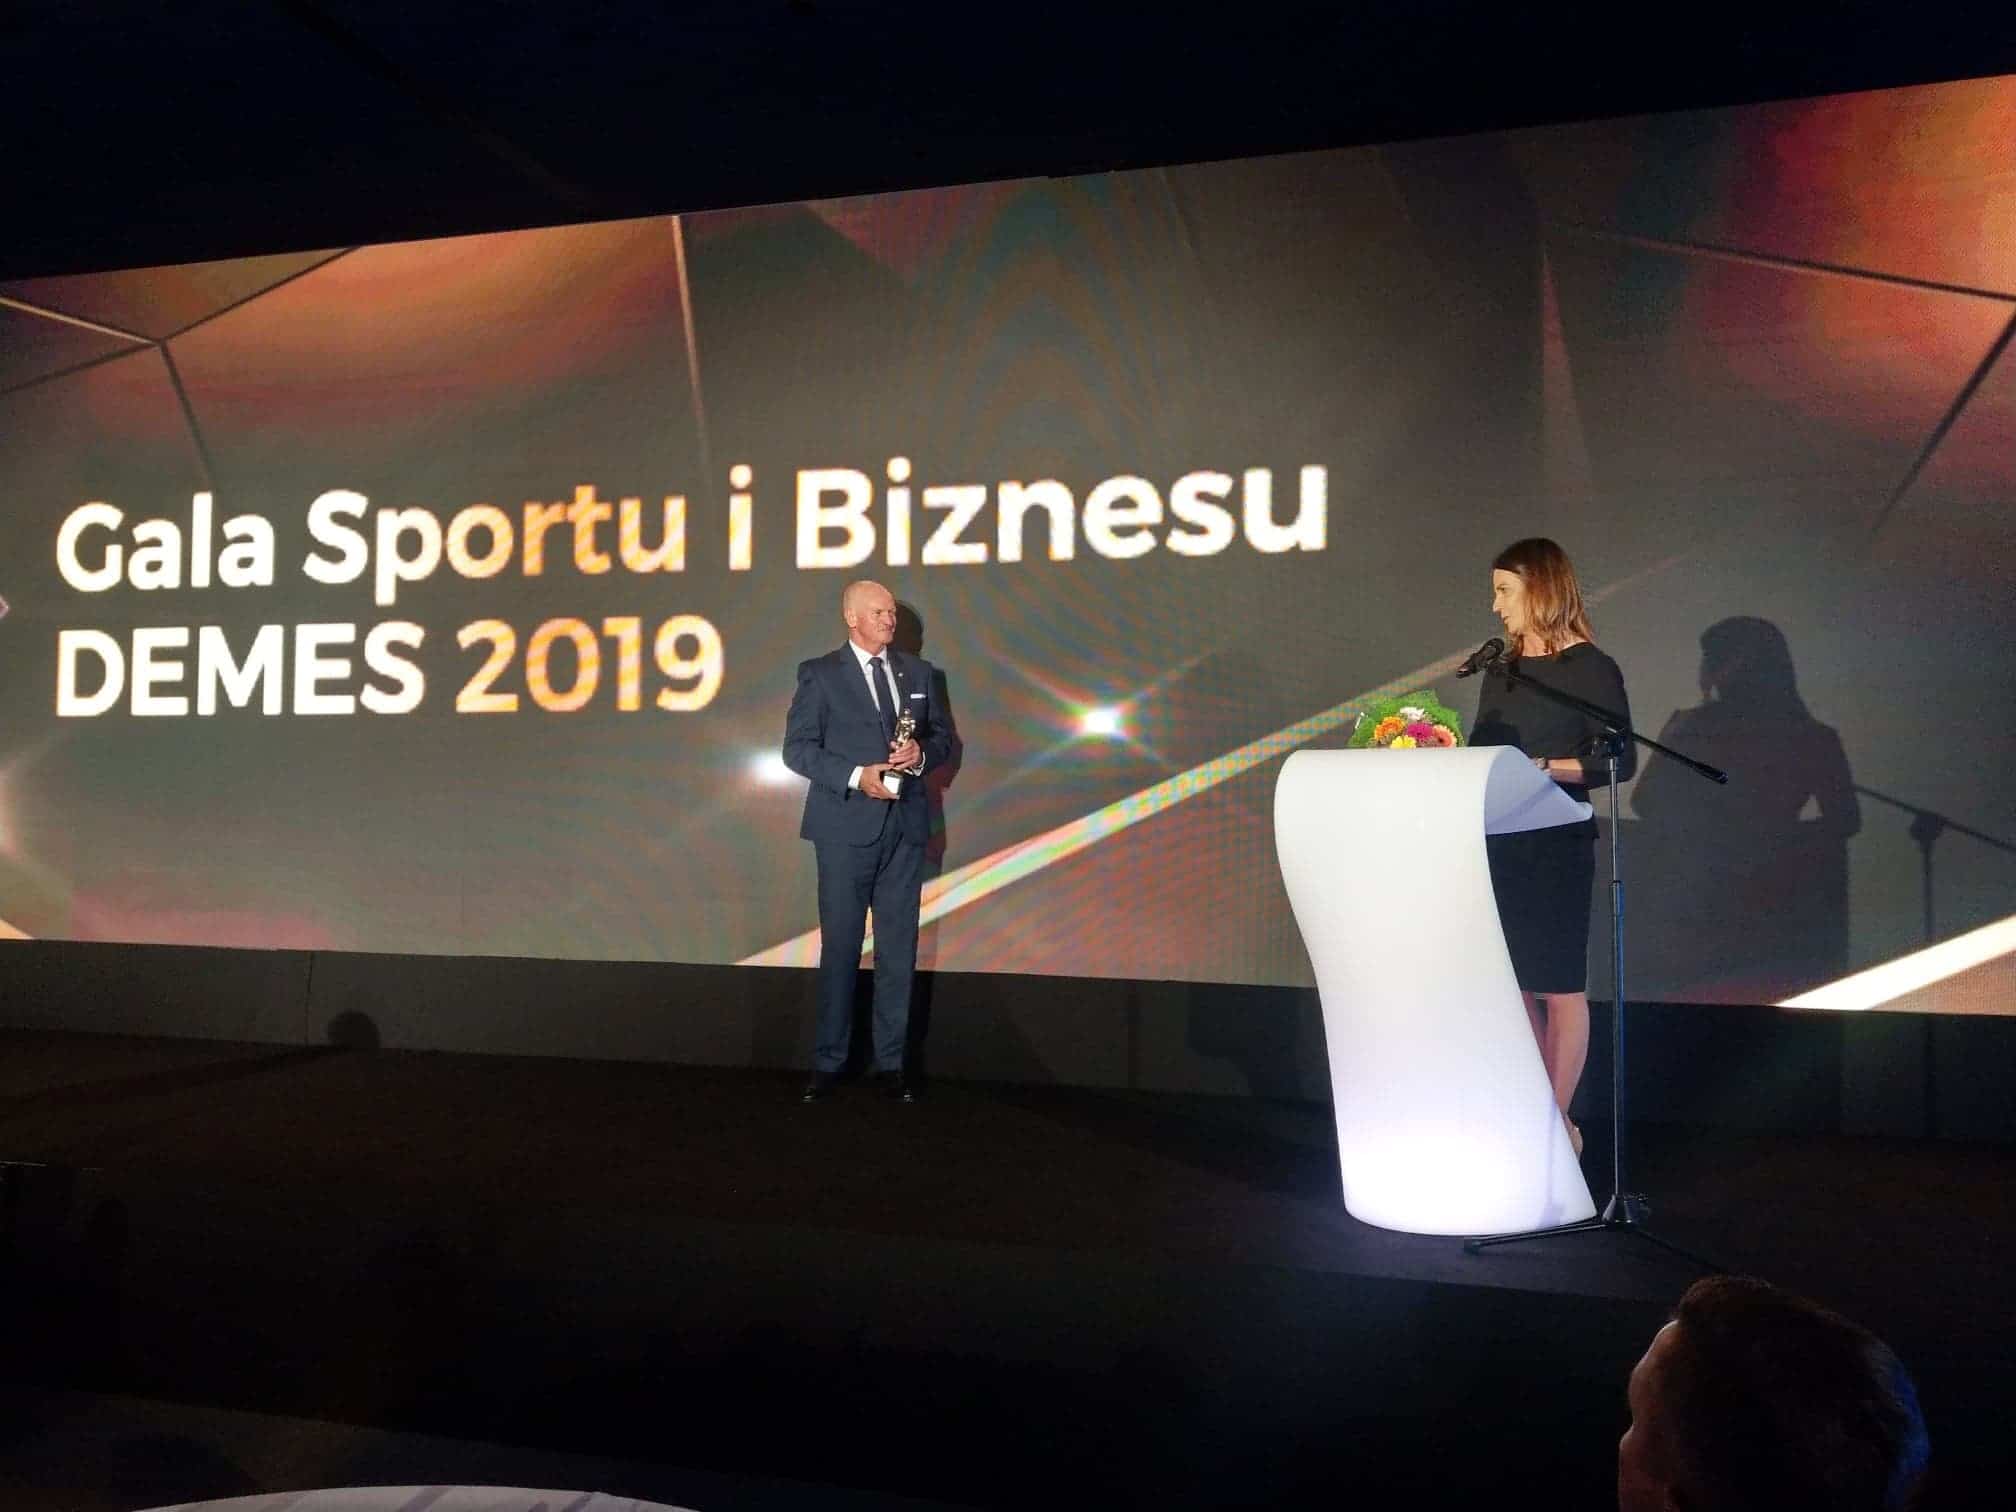 16. Gala Nagród Biznesu Sportowego: Specjalne wyróżnienie dla Polskiego Związku Tenisowego